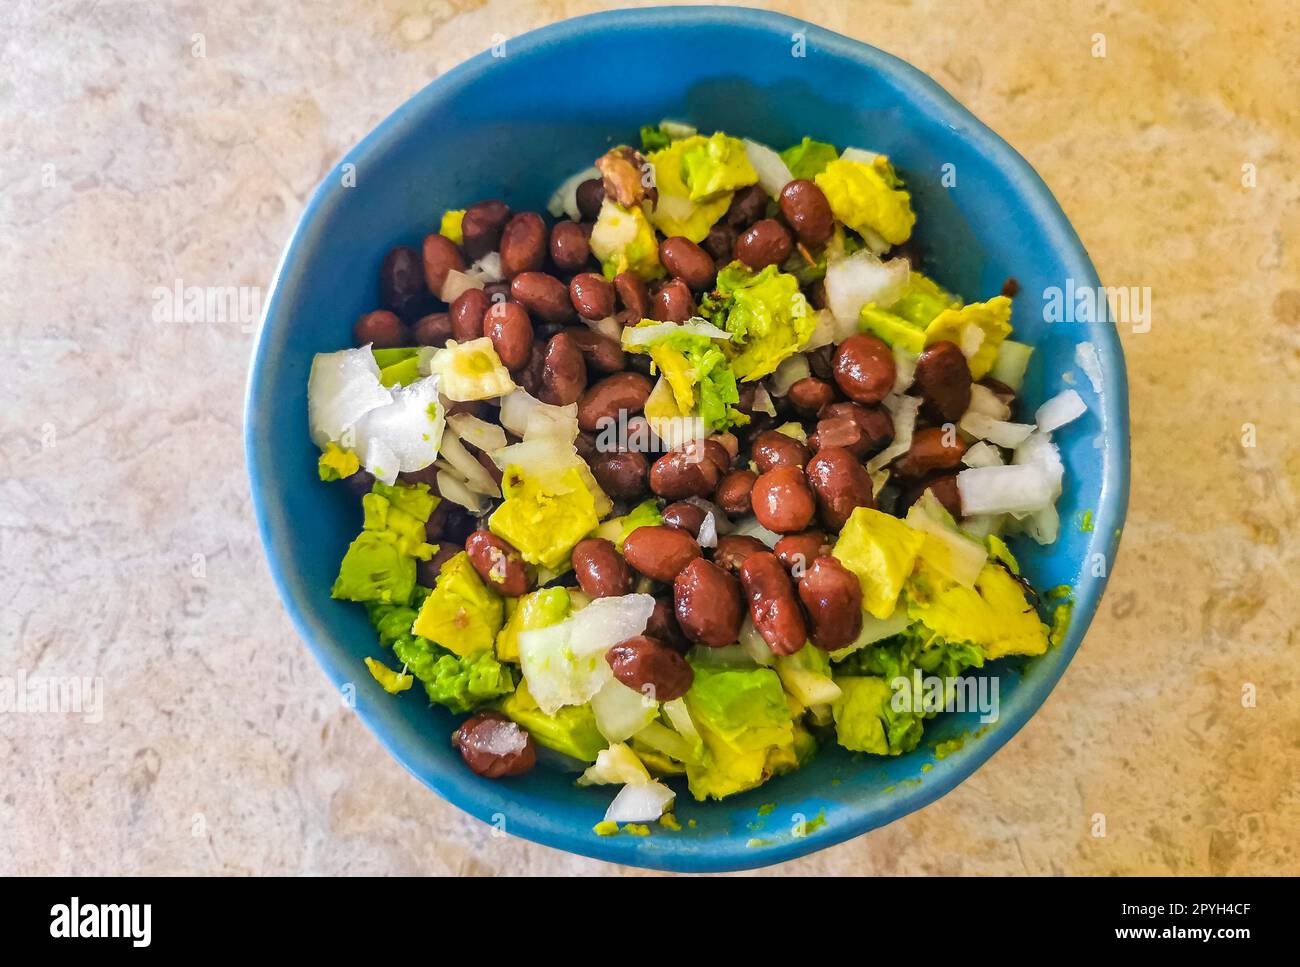 Salade de haricots, avocat et oignons maison dans un bol bleu Mexique. Banque D'Images